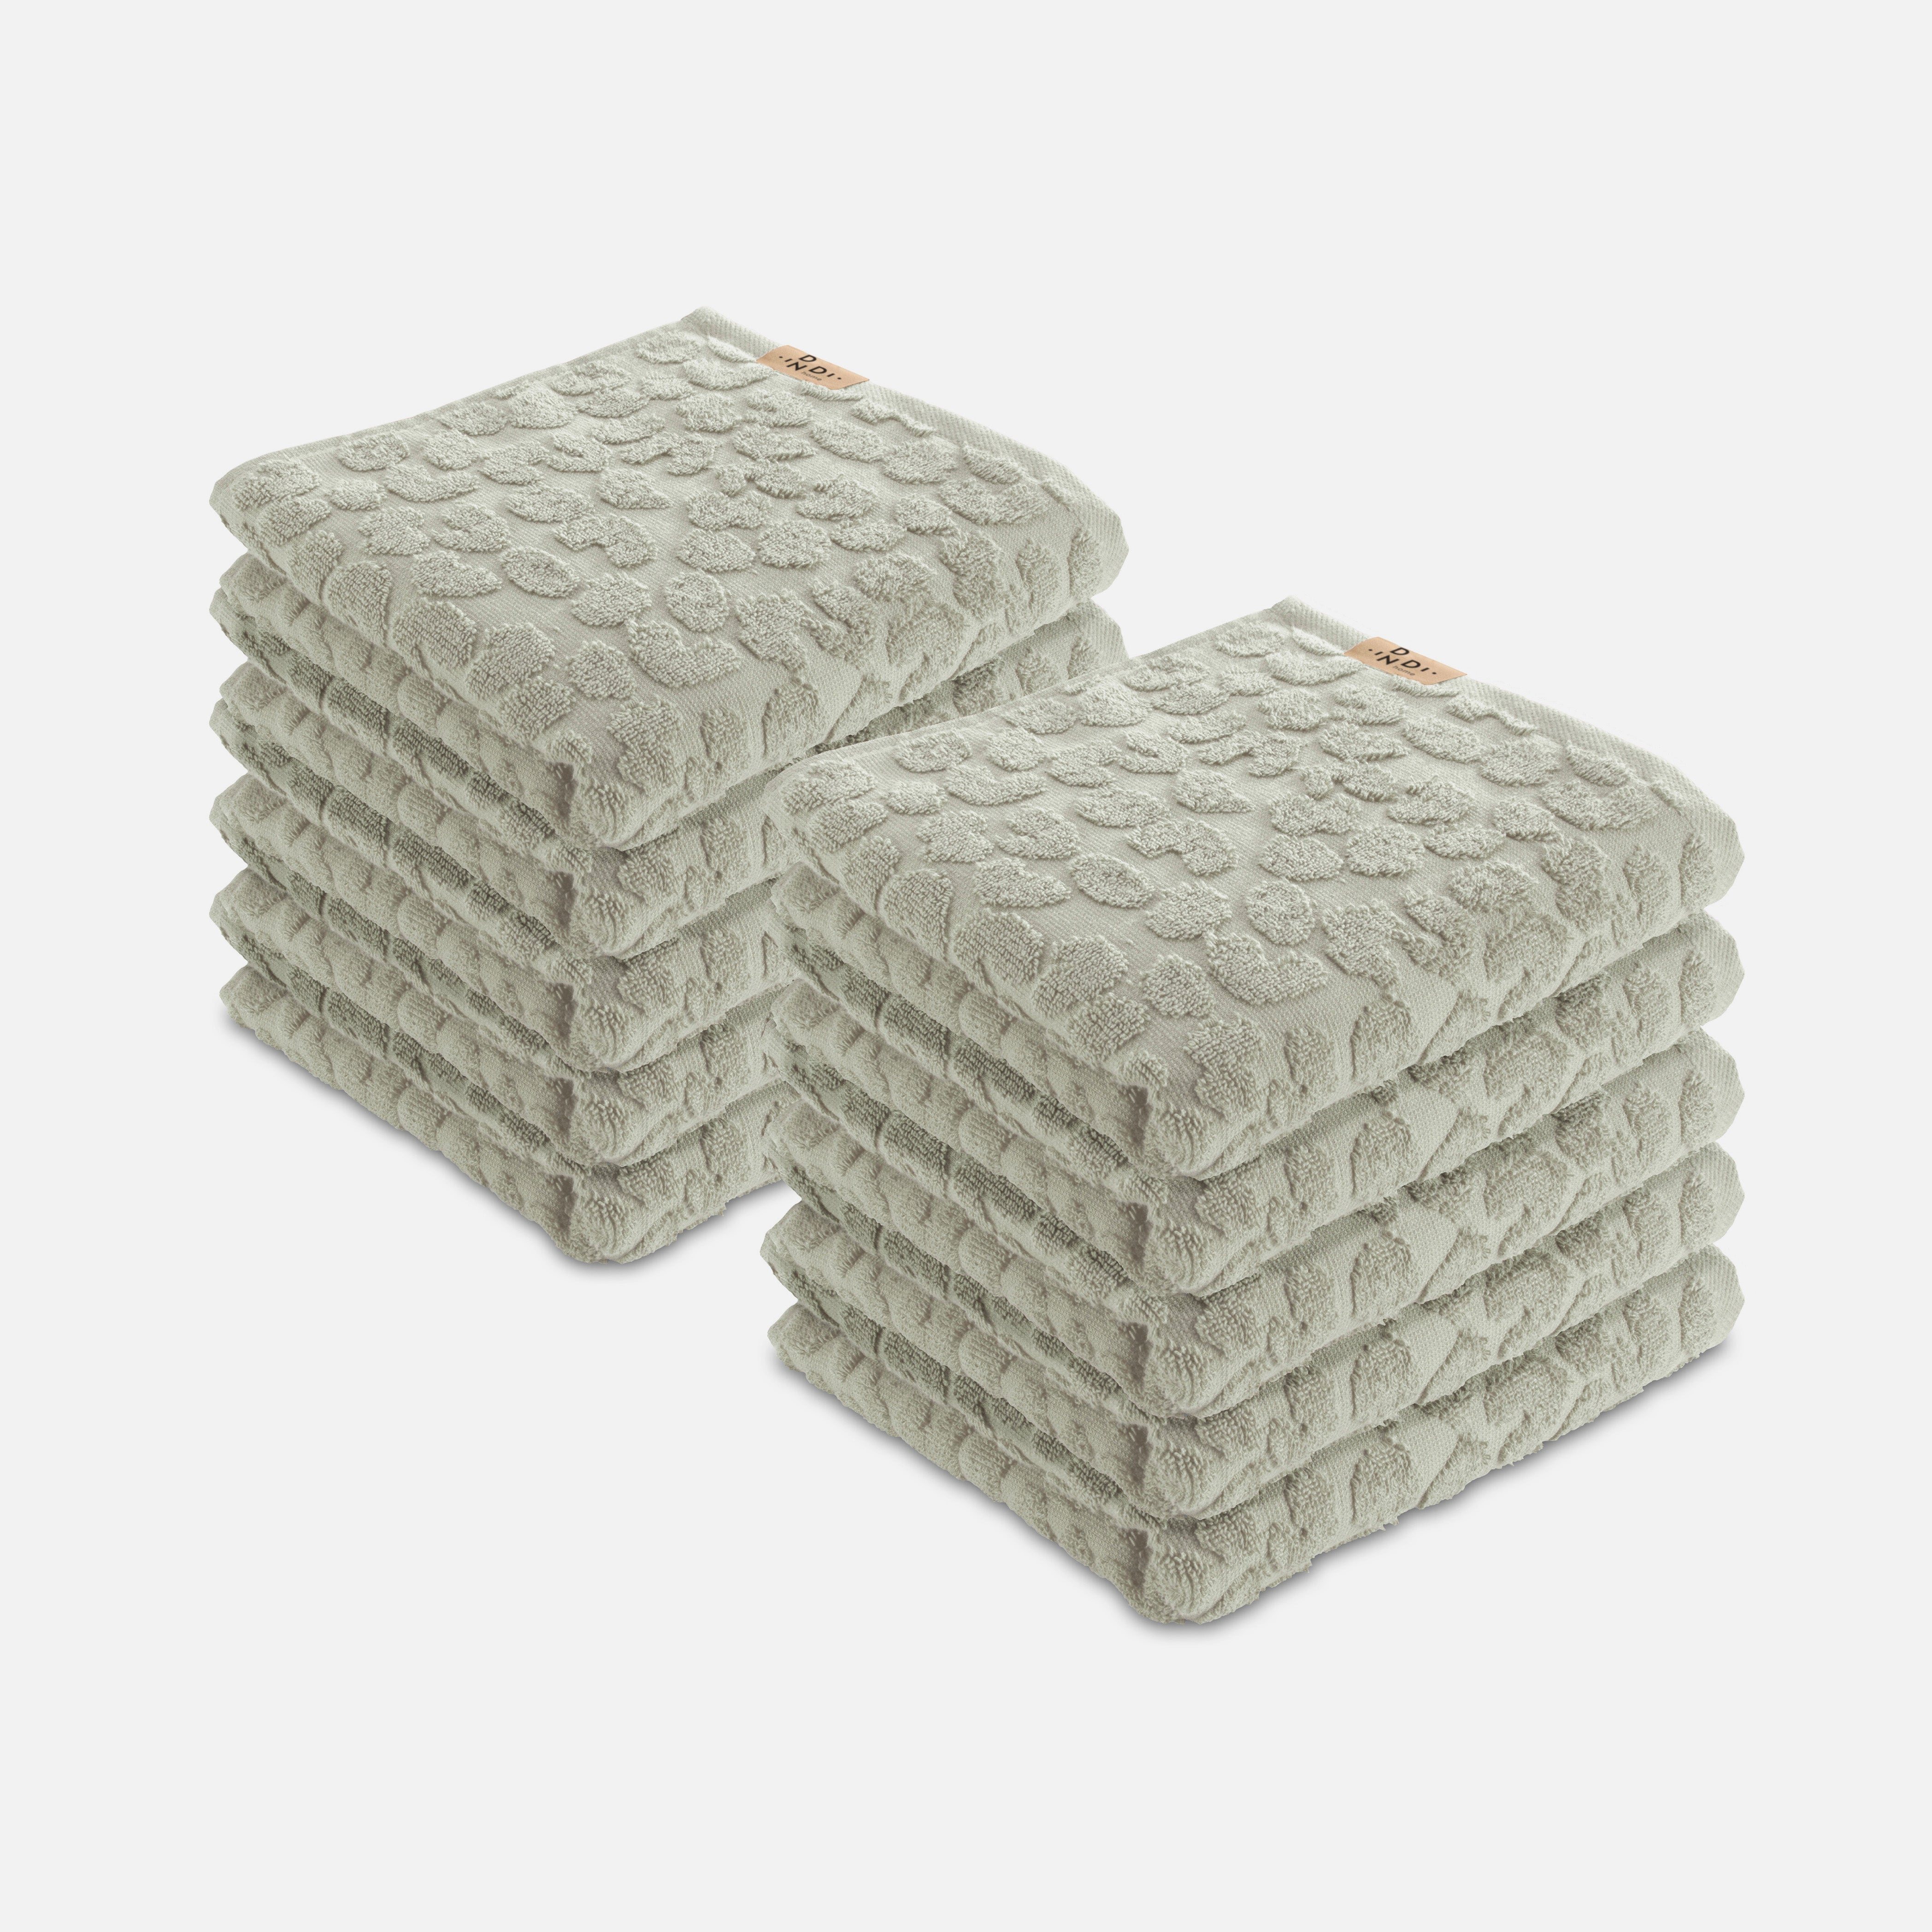 Handdoek Soft Beauty Set van 10 stuks 50x100cm